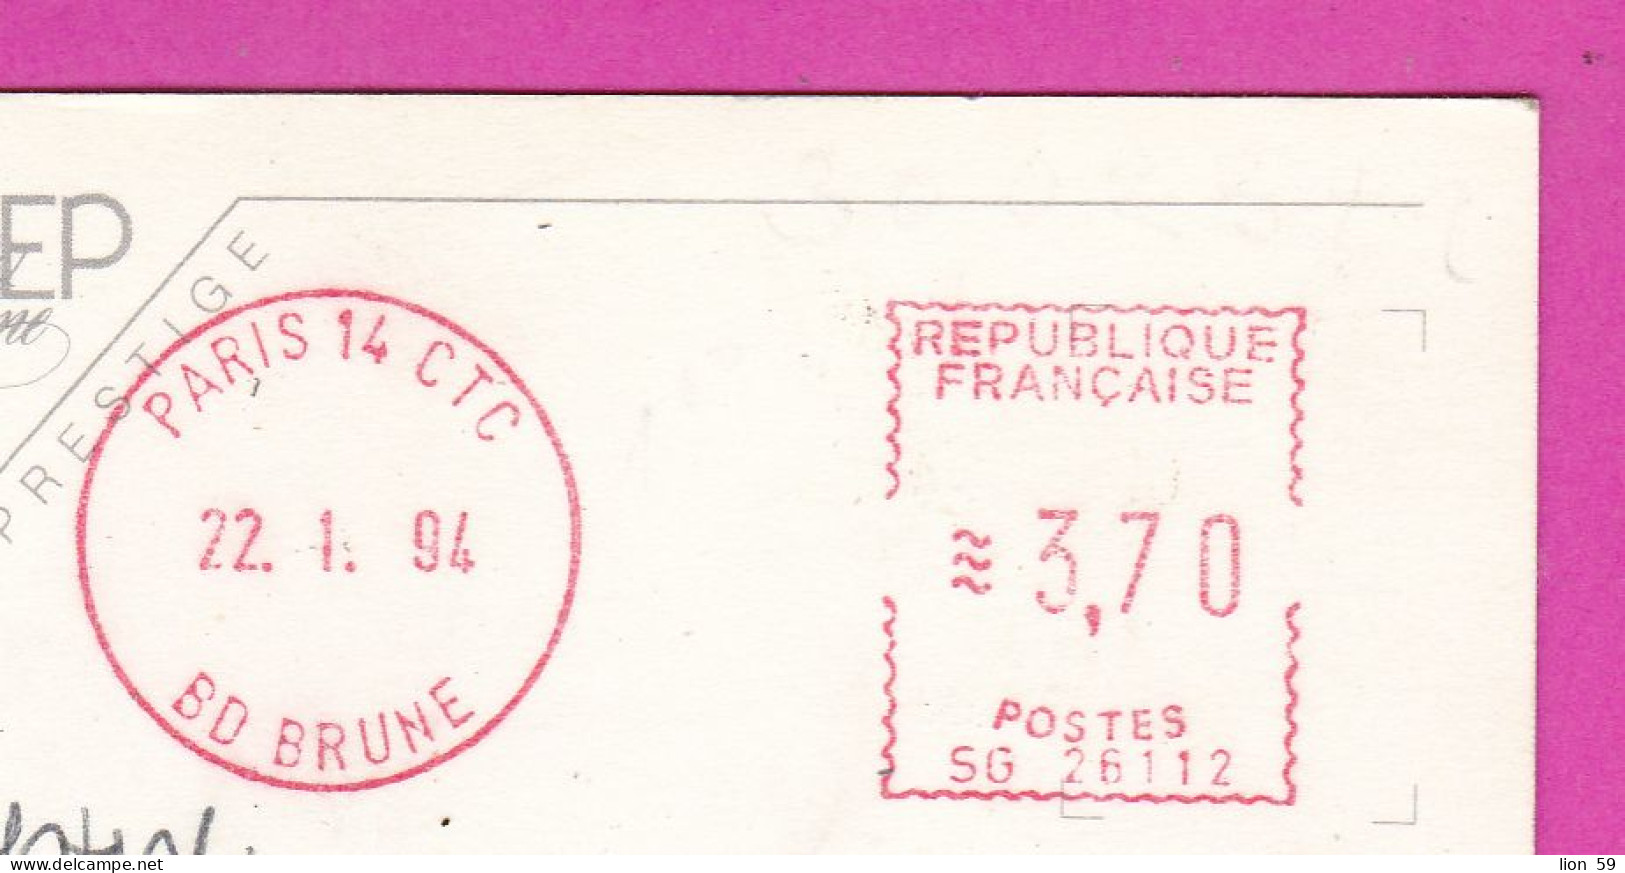 294099 / France - PARIS La Tour Eiffel , Eiffel Tower PC 1964 USED 3.70 - Printer Machine (EMA) Paris 14 CTC Bo Brune - Covers & Documents